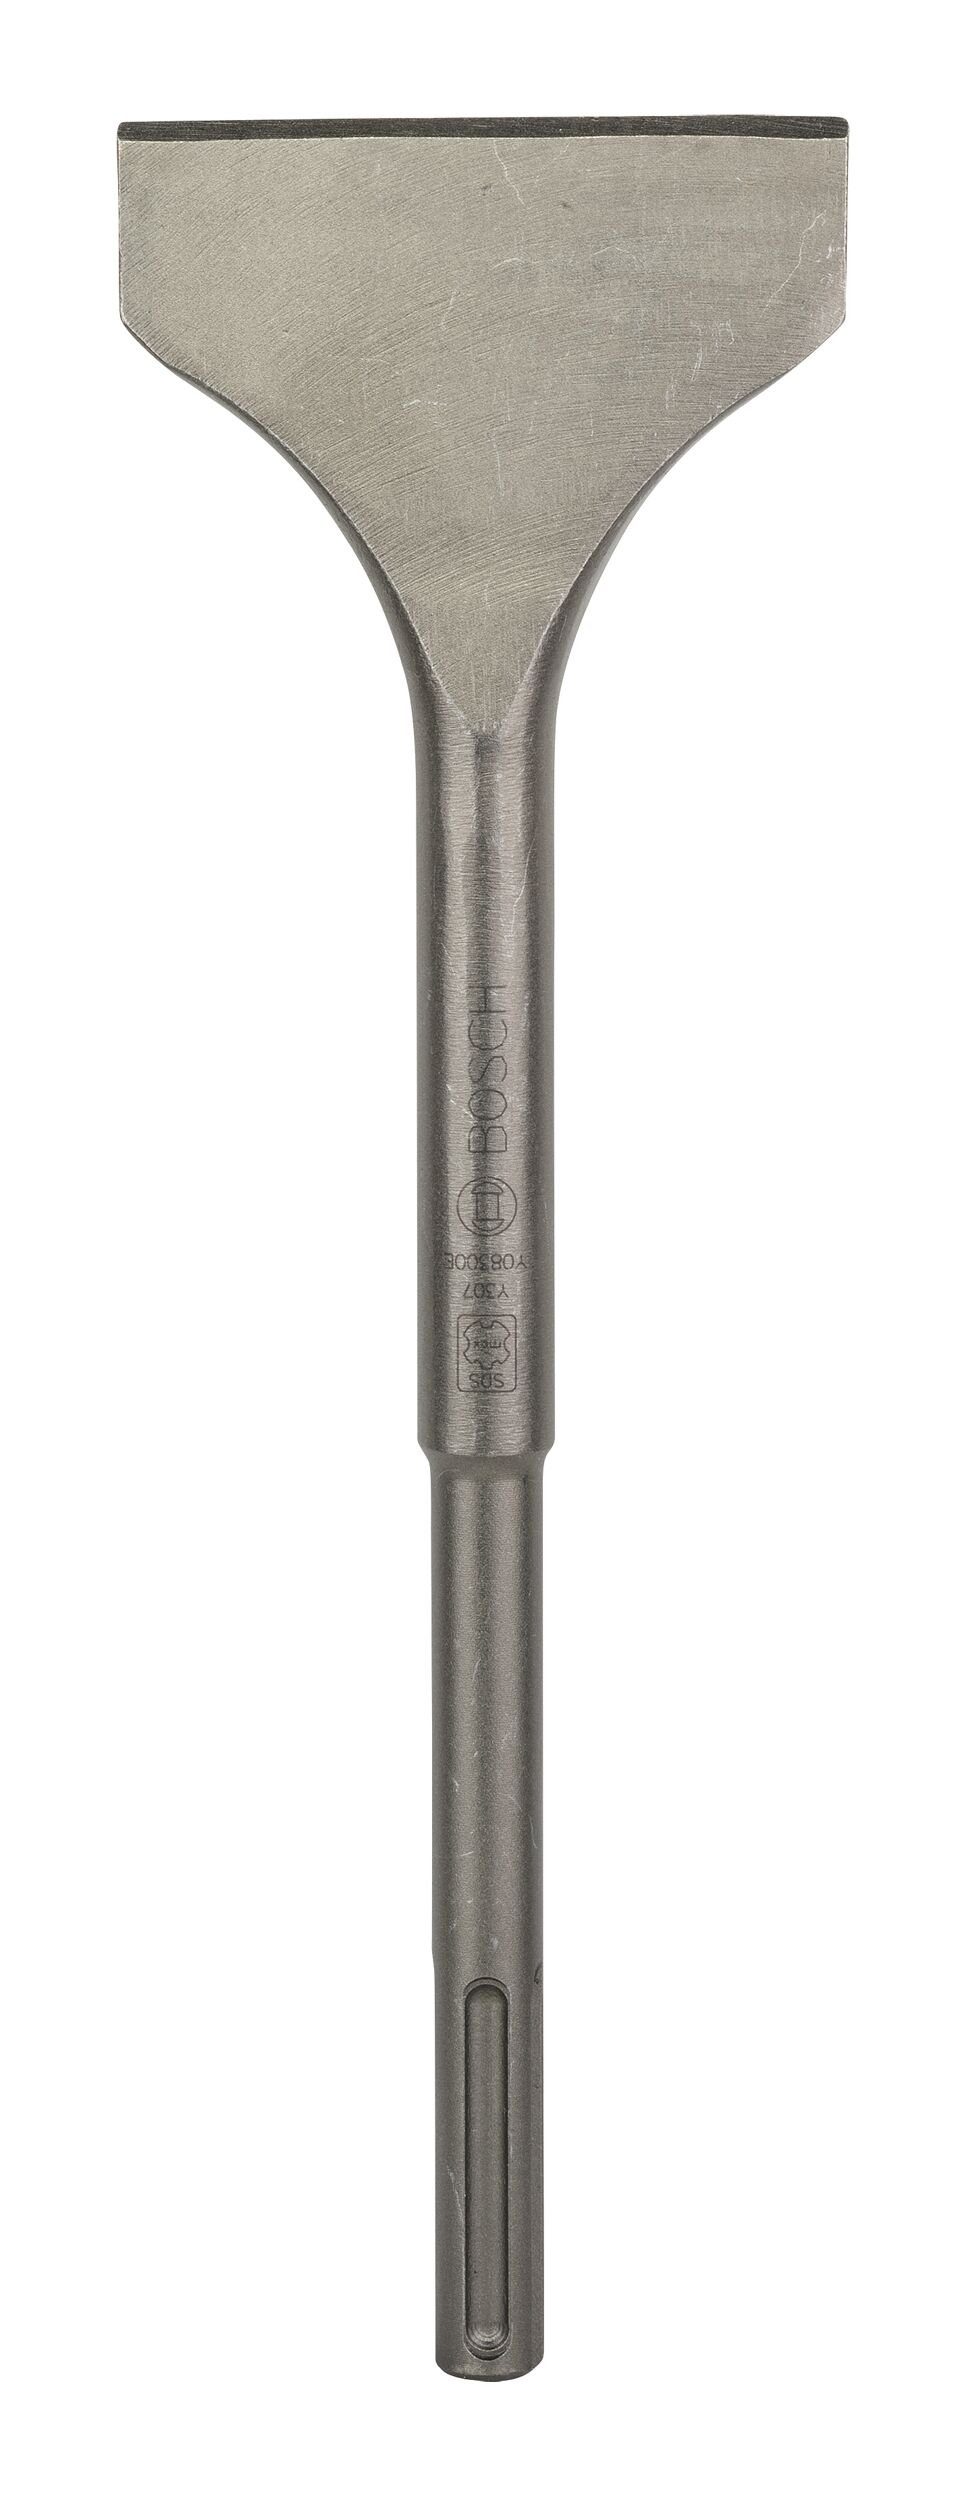 BOSCH Universalbohrer, Spatmeißel mit SDS max-Aufnahme - 350 x 115 mm